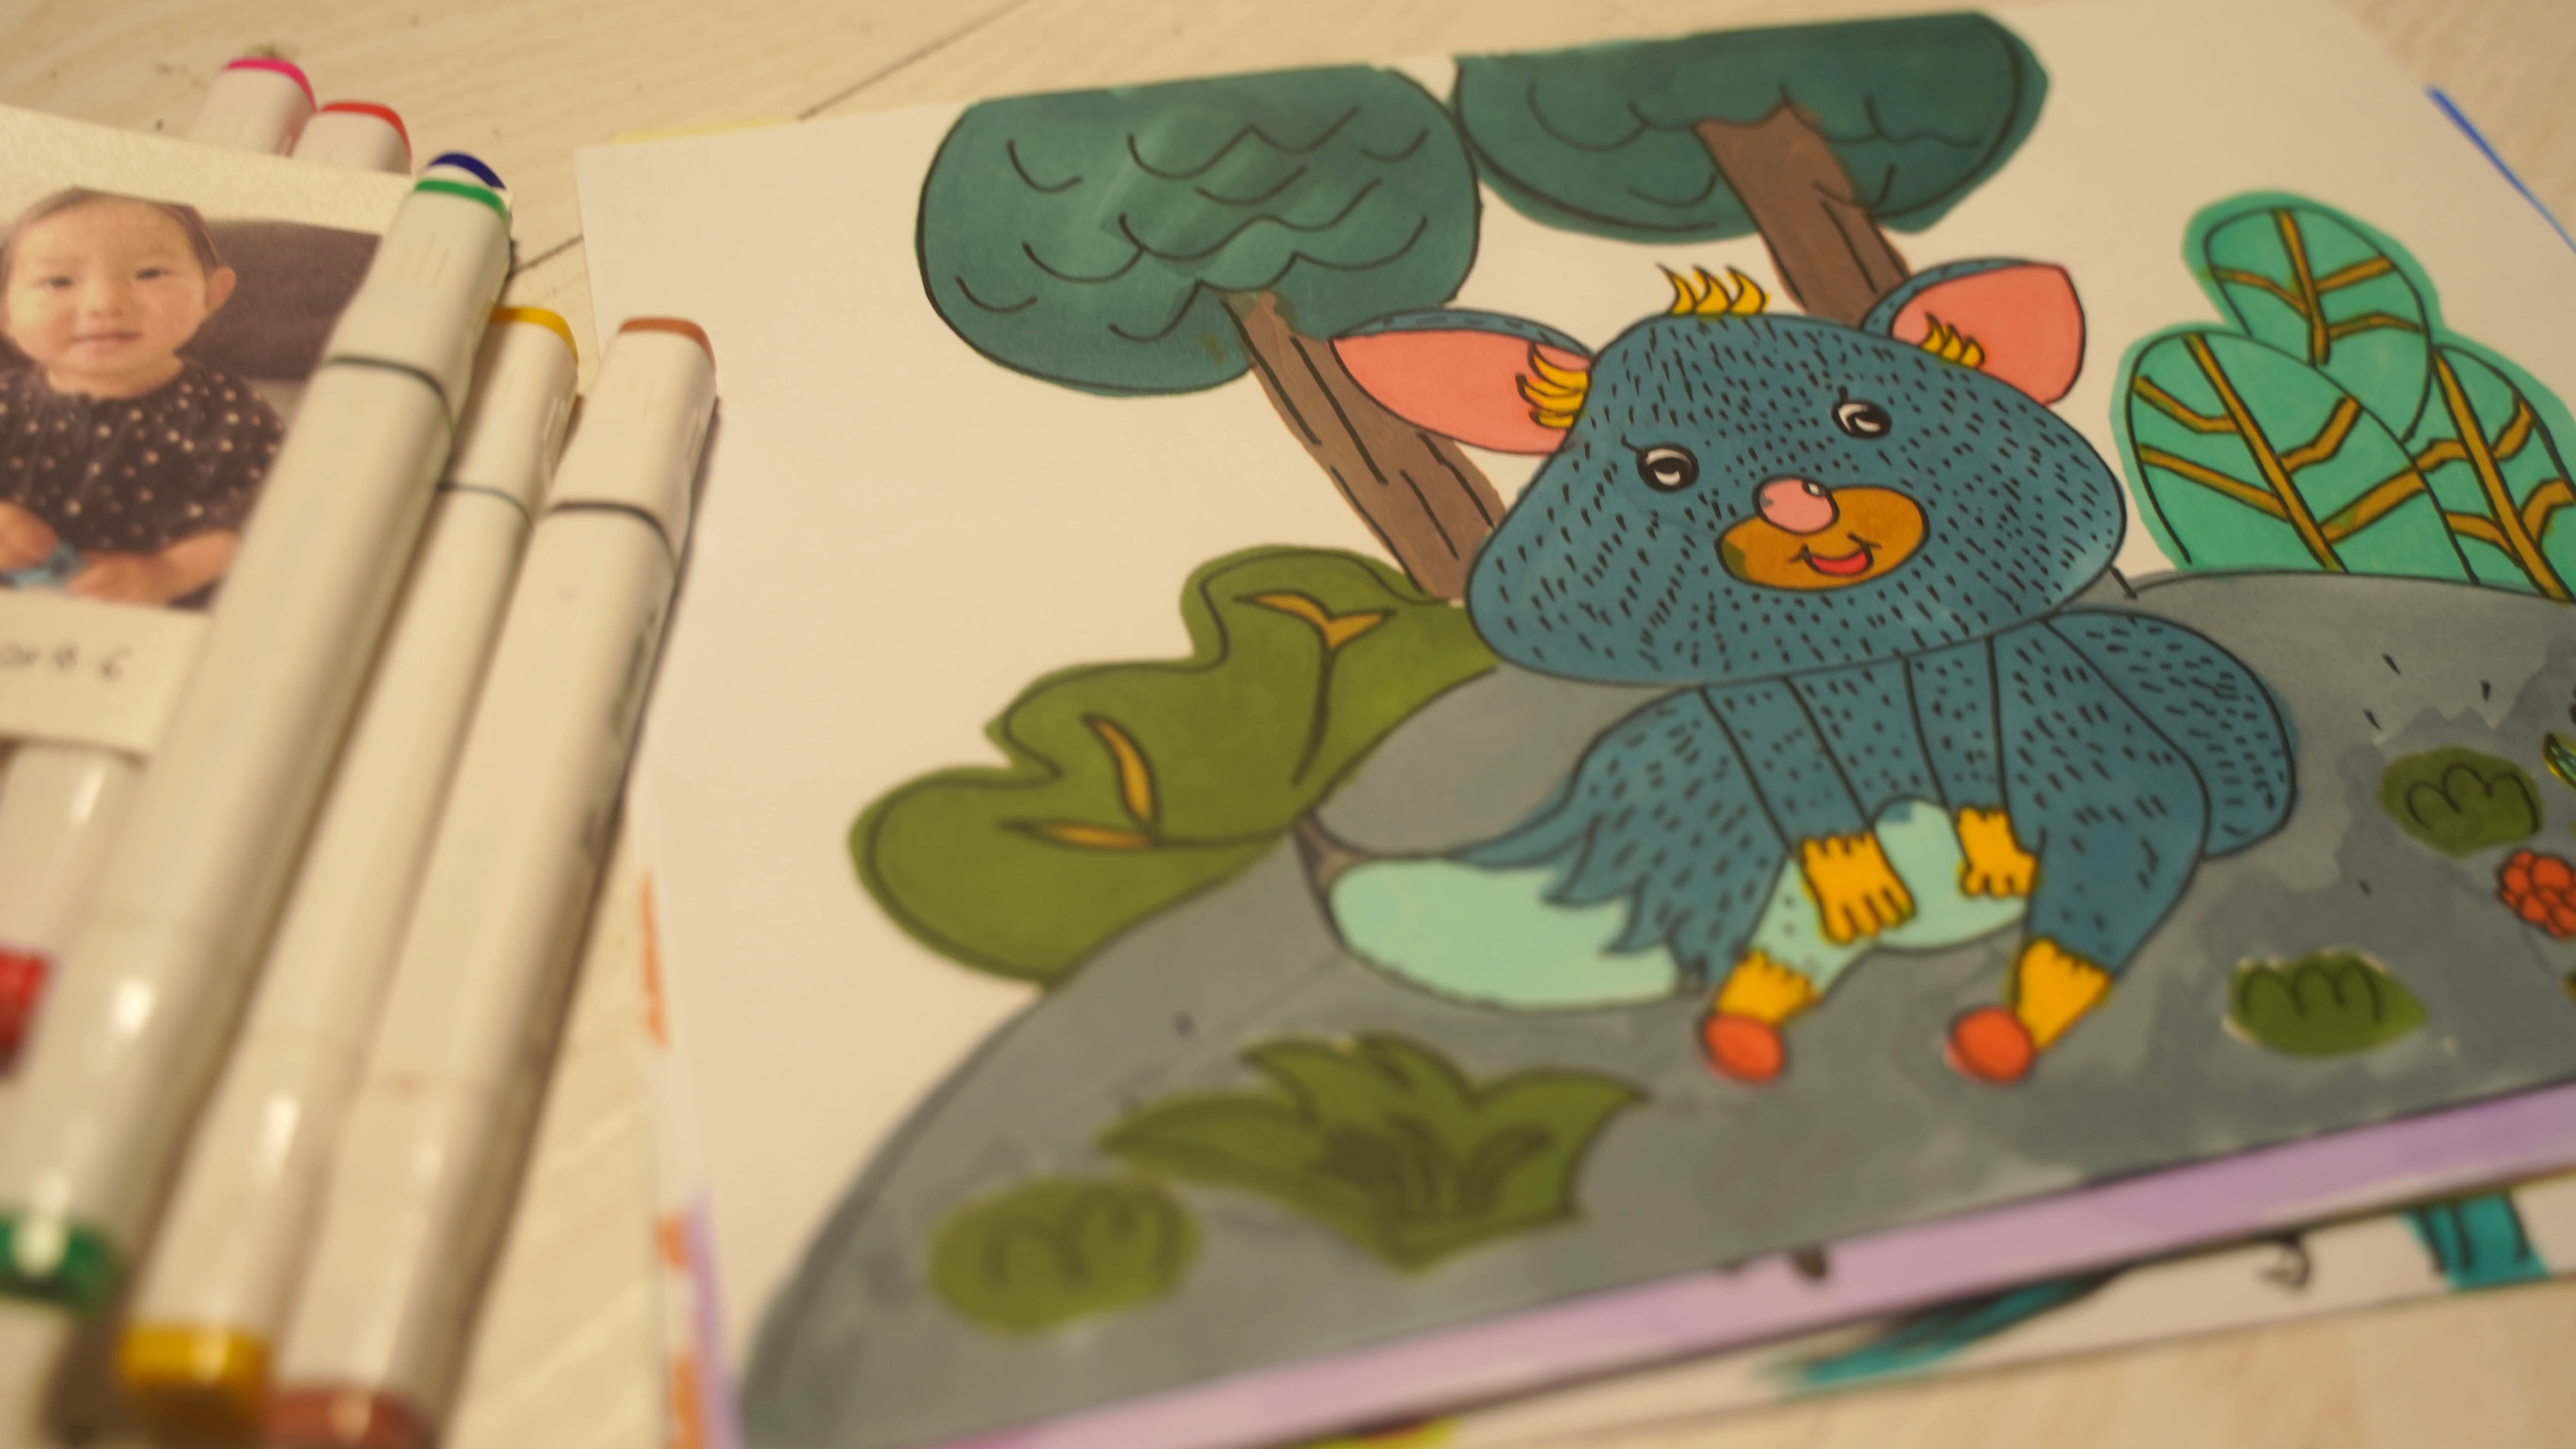 宝宝可打印简笔画课程案例 可爱小树袋熊的故事创意美术教程